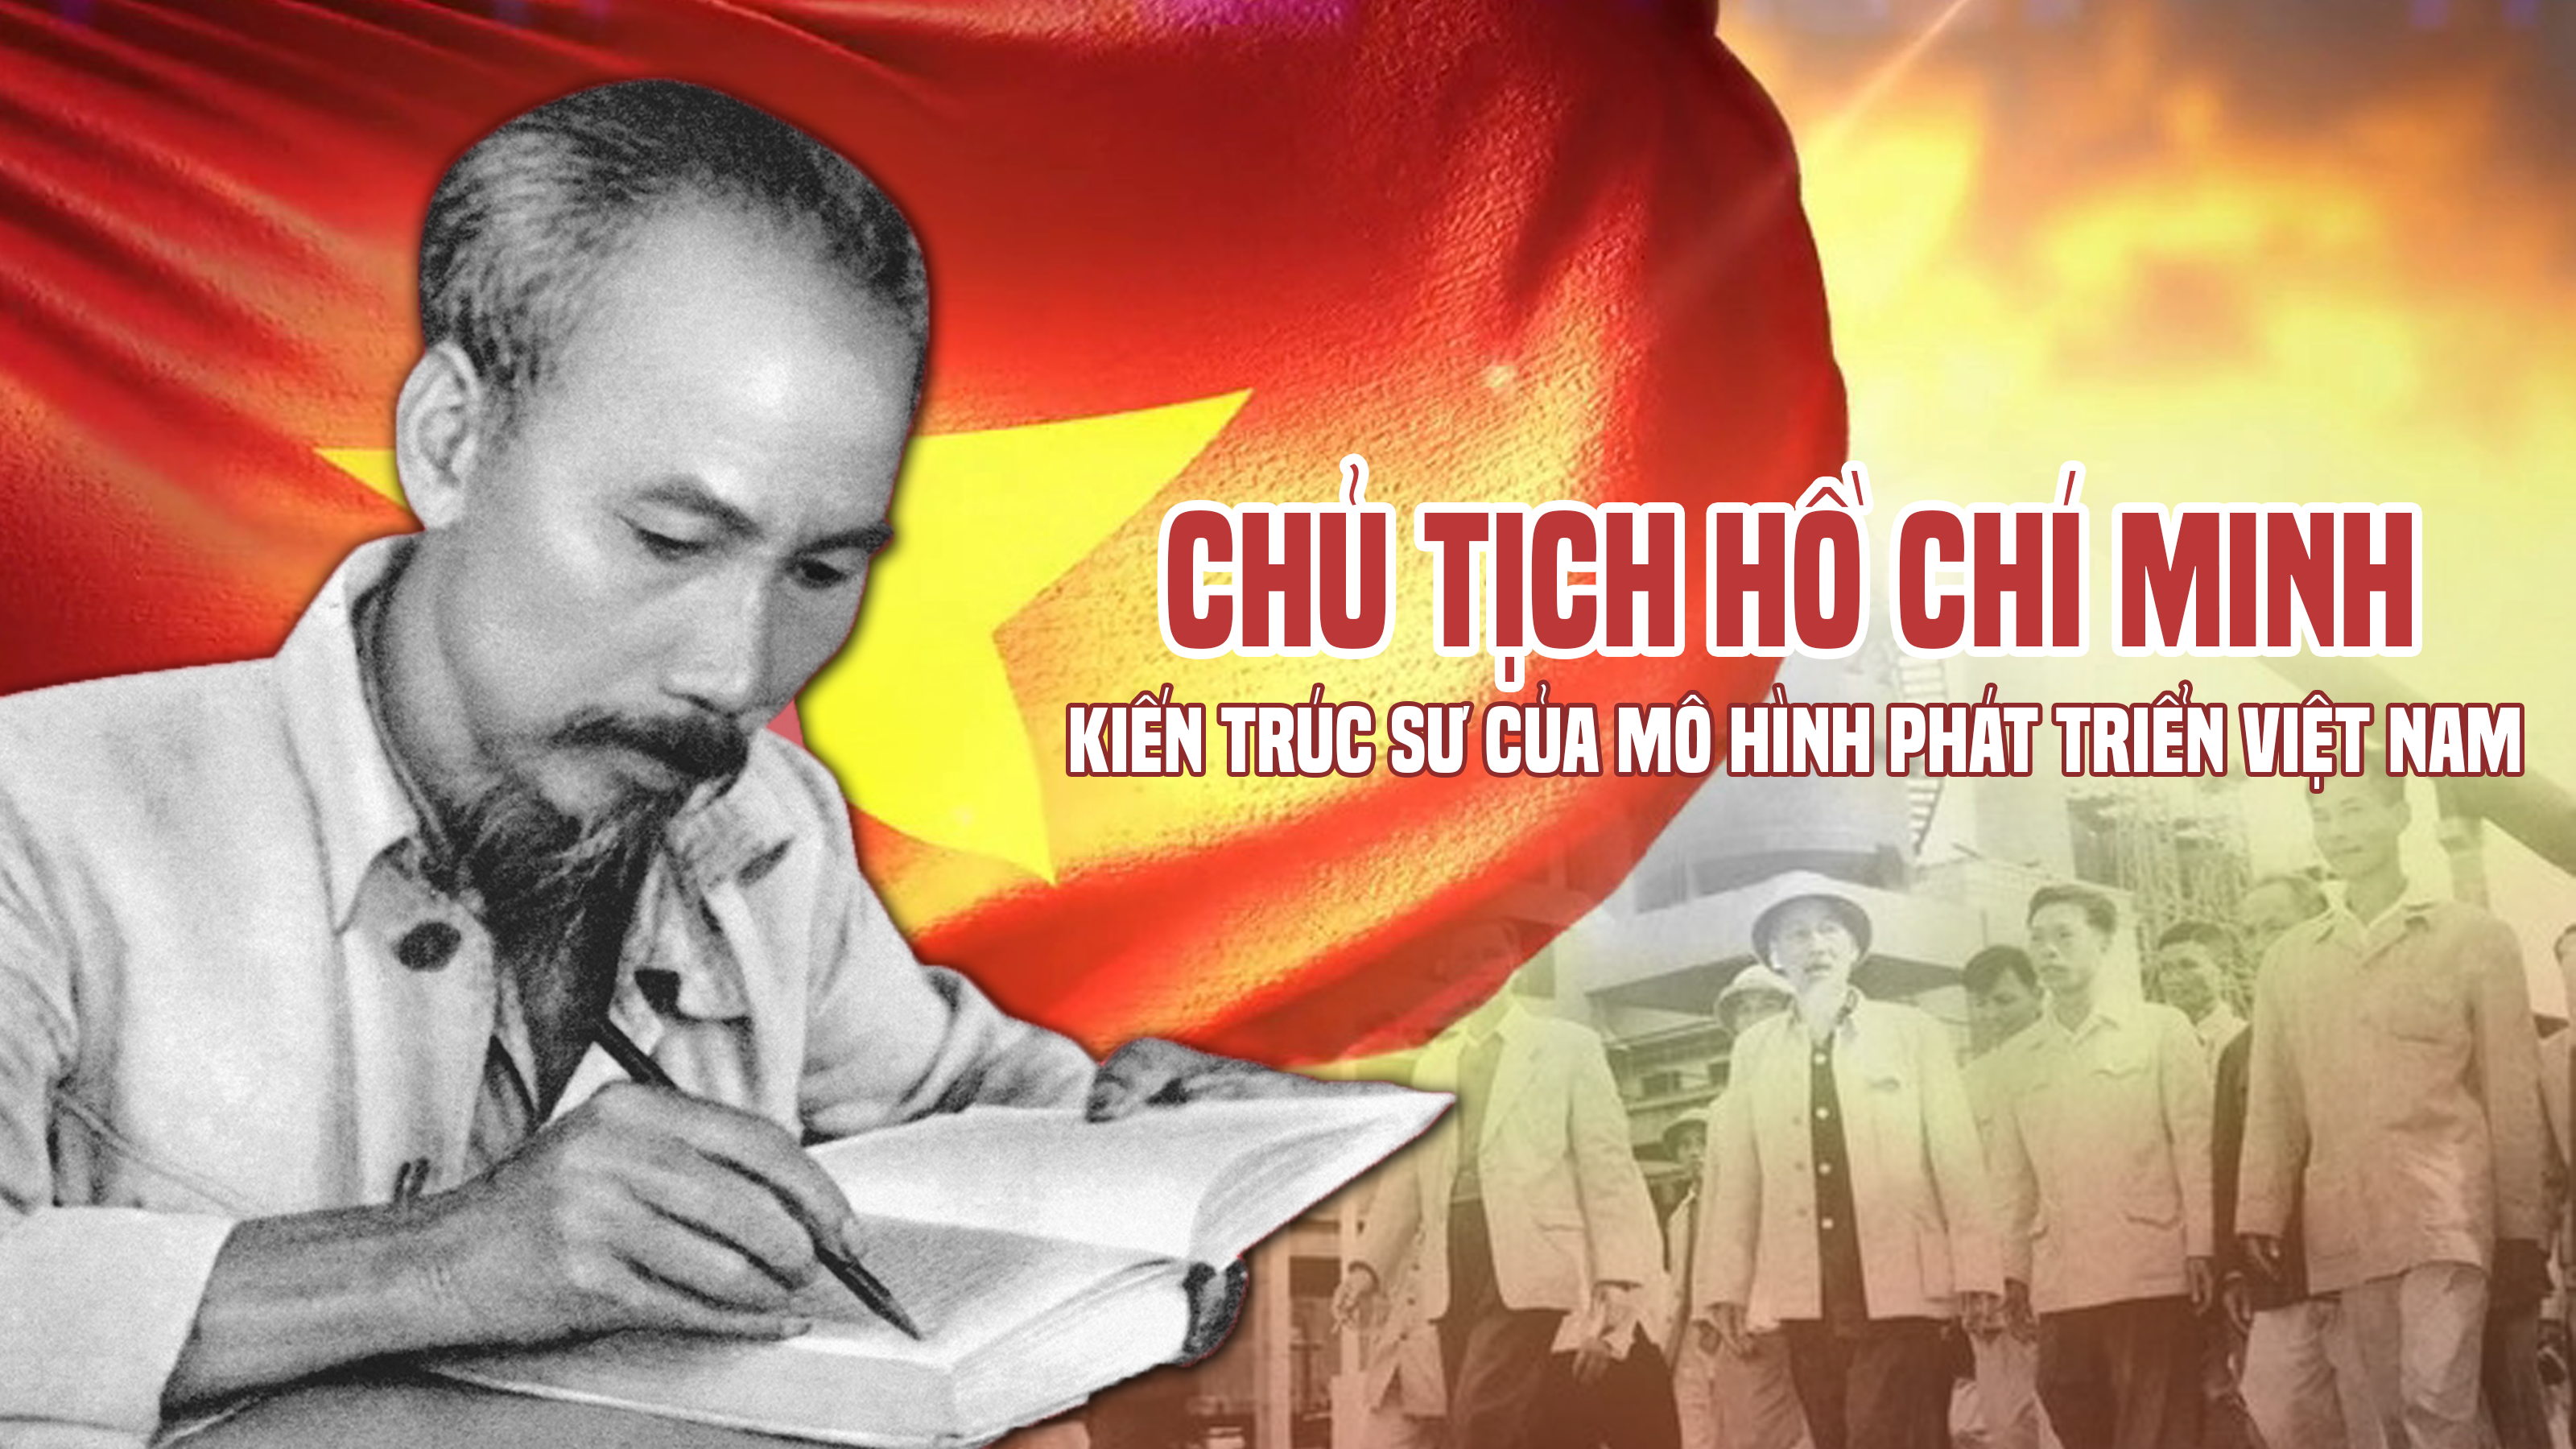 Chủ tịch Hồ Chí Minh - Kiến trúc sư của mô hình phát triển Việt Nam